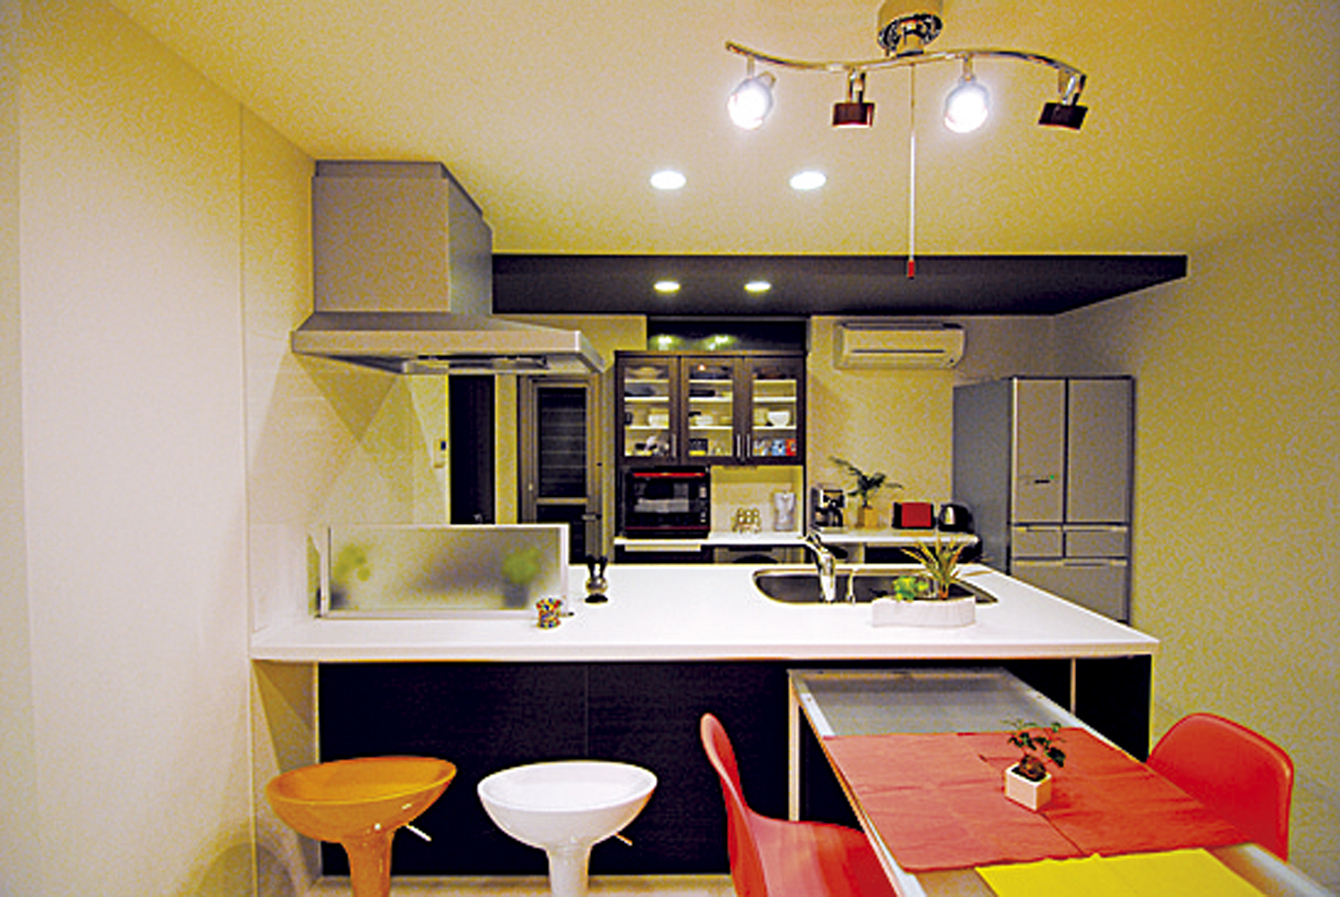 オープンスタイルの洒落たキッチンに、ビビッドなカラーの椅子が映える